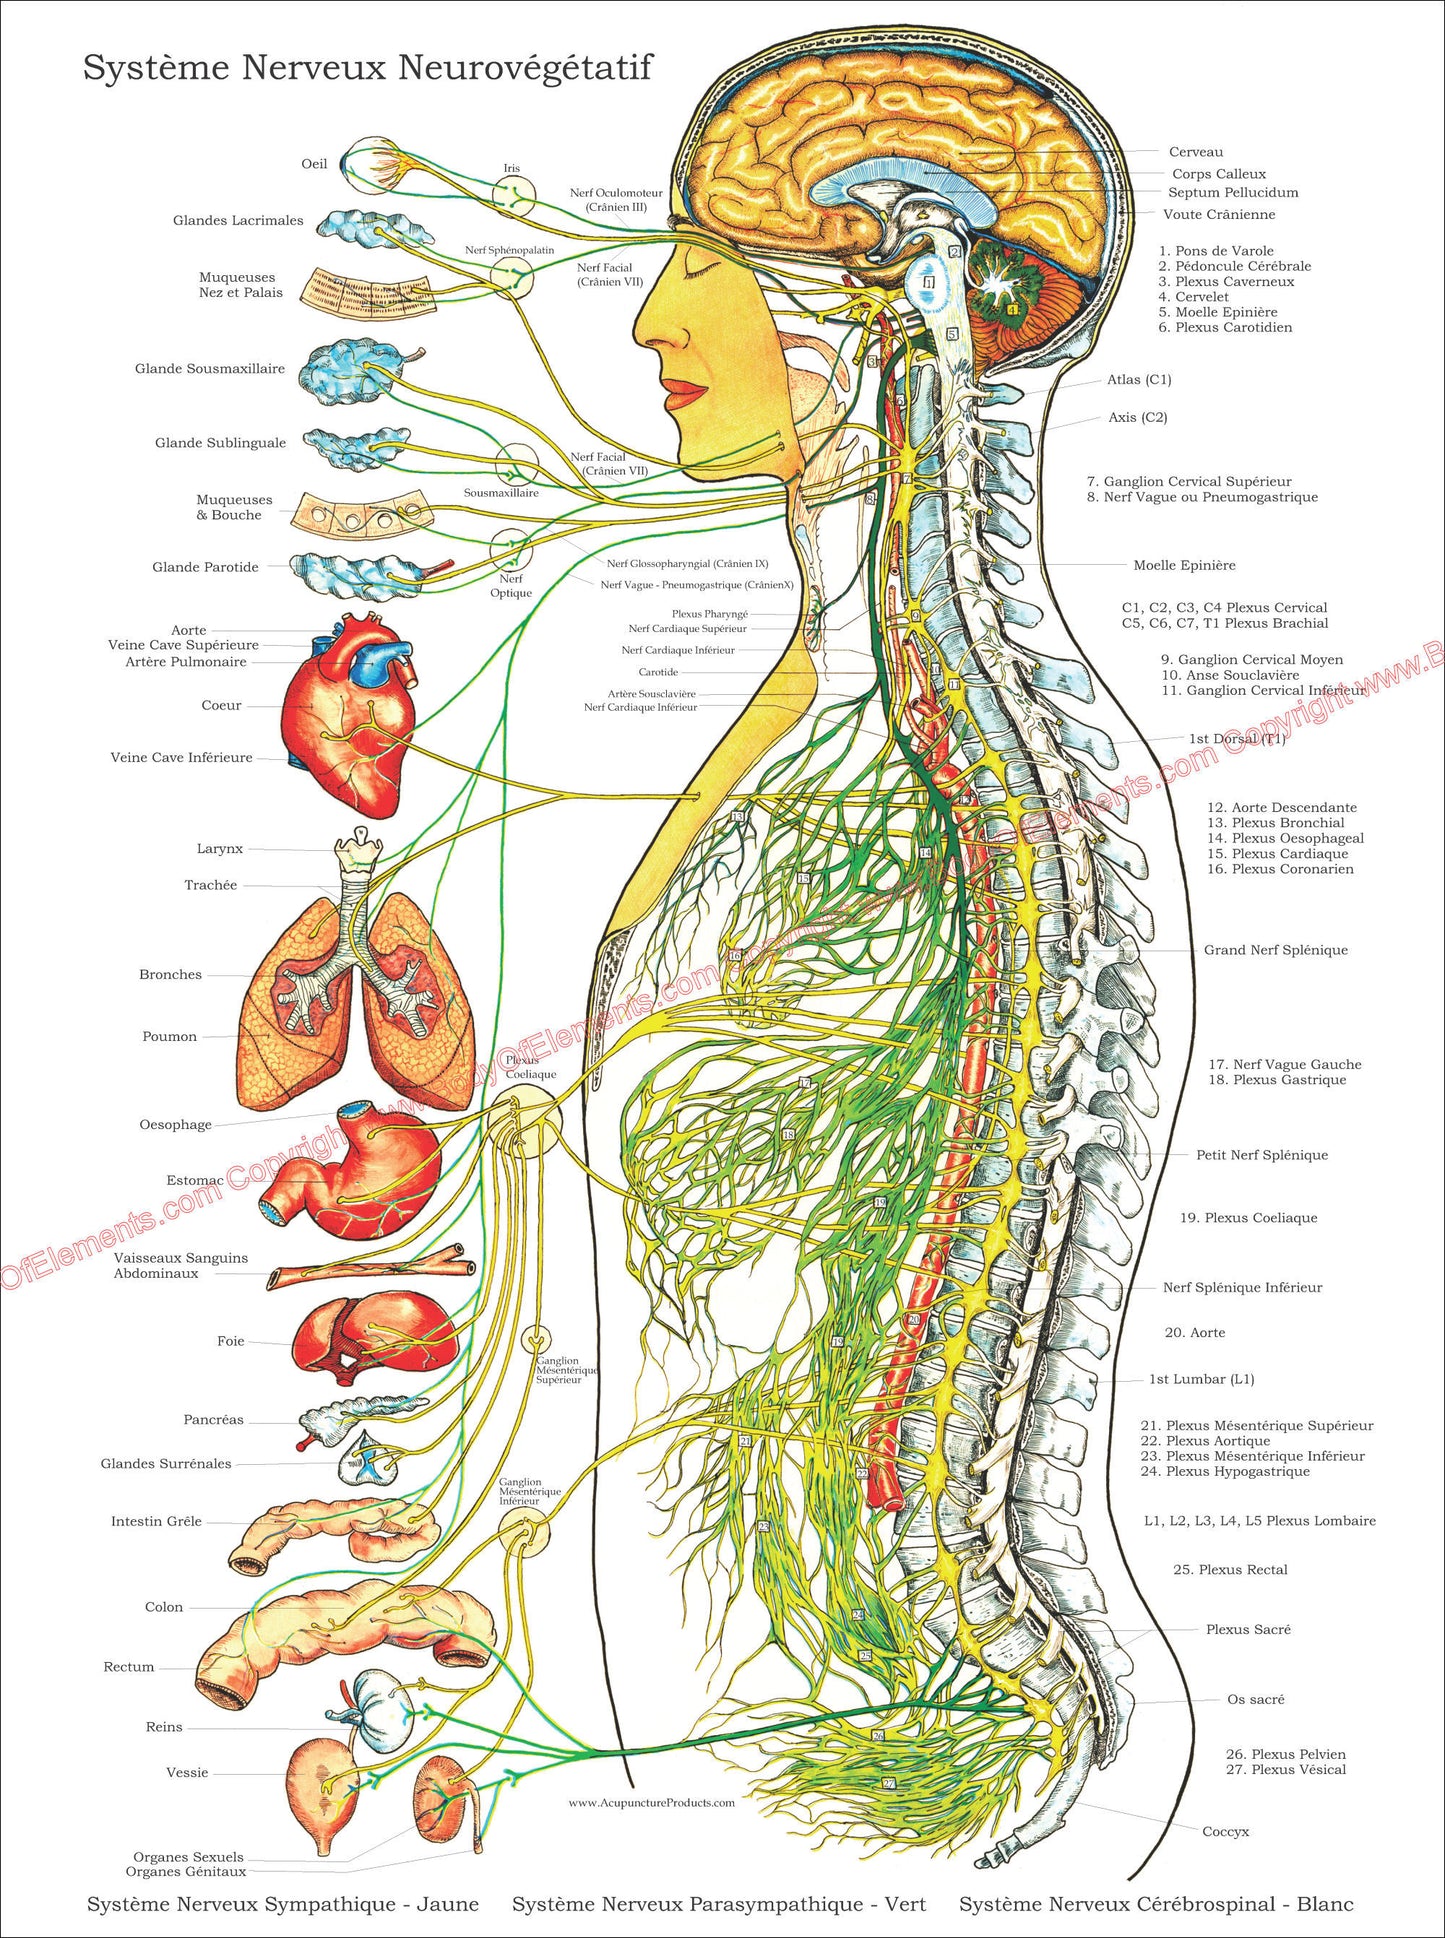 Systeme nerveux neurovegetatif